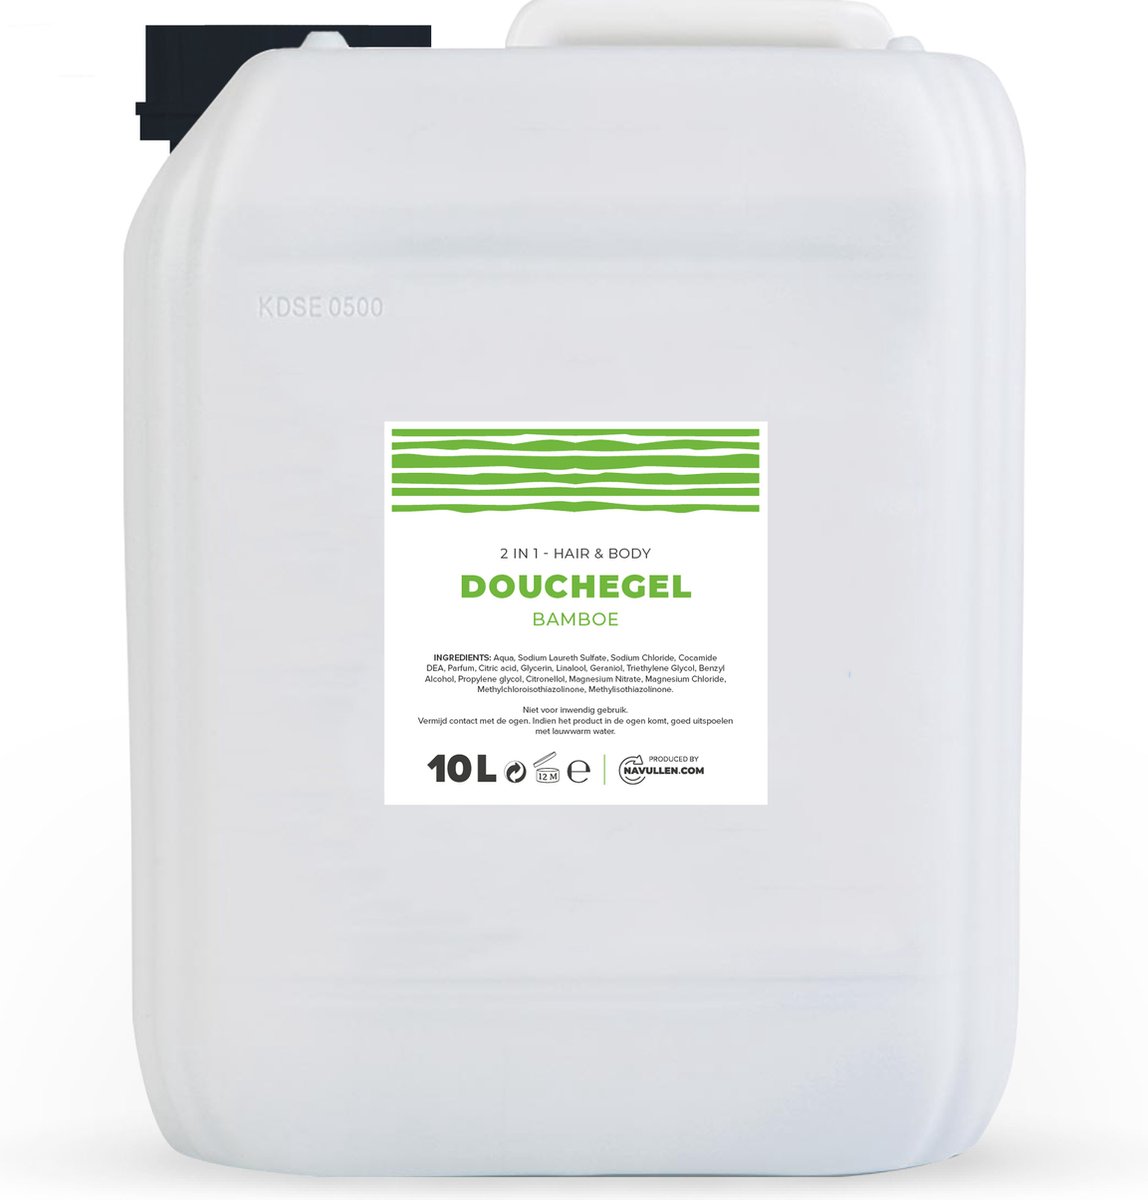 Douchegel - Bamboe - 10 Liter - Jerrycan - Hair & Body - Navulling - Navullen